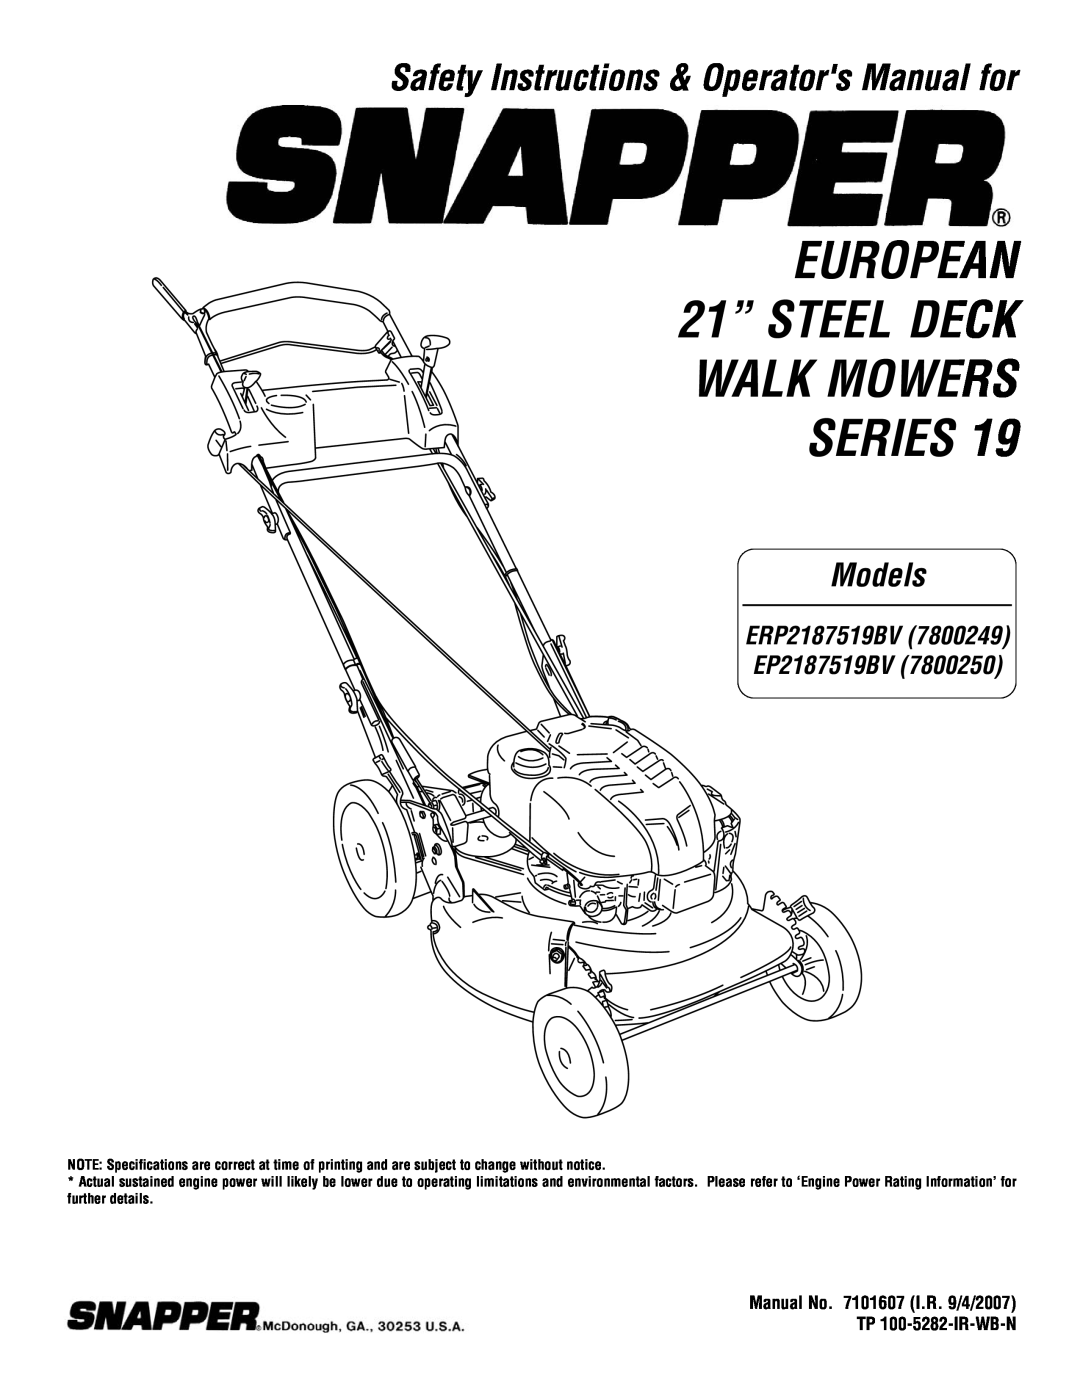 Snapper ERP2187519BV, EP2187519BV specifications EUROPEAN 21” STEEL DECK WALK MOWERS SERIES, Models 